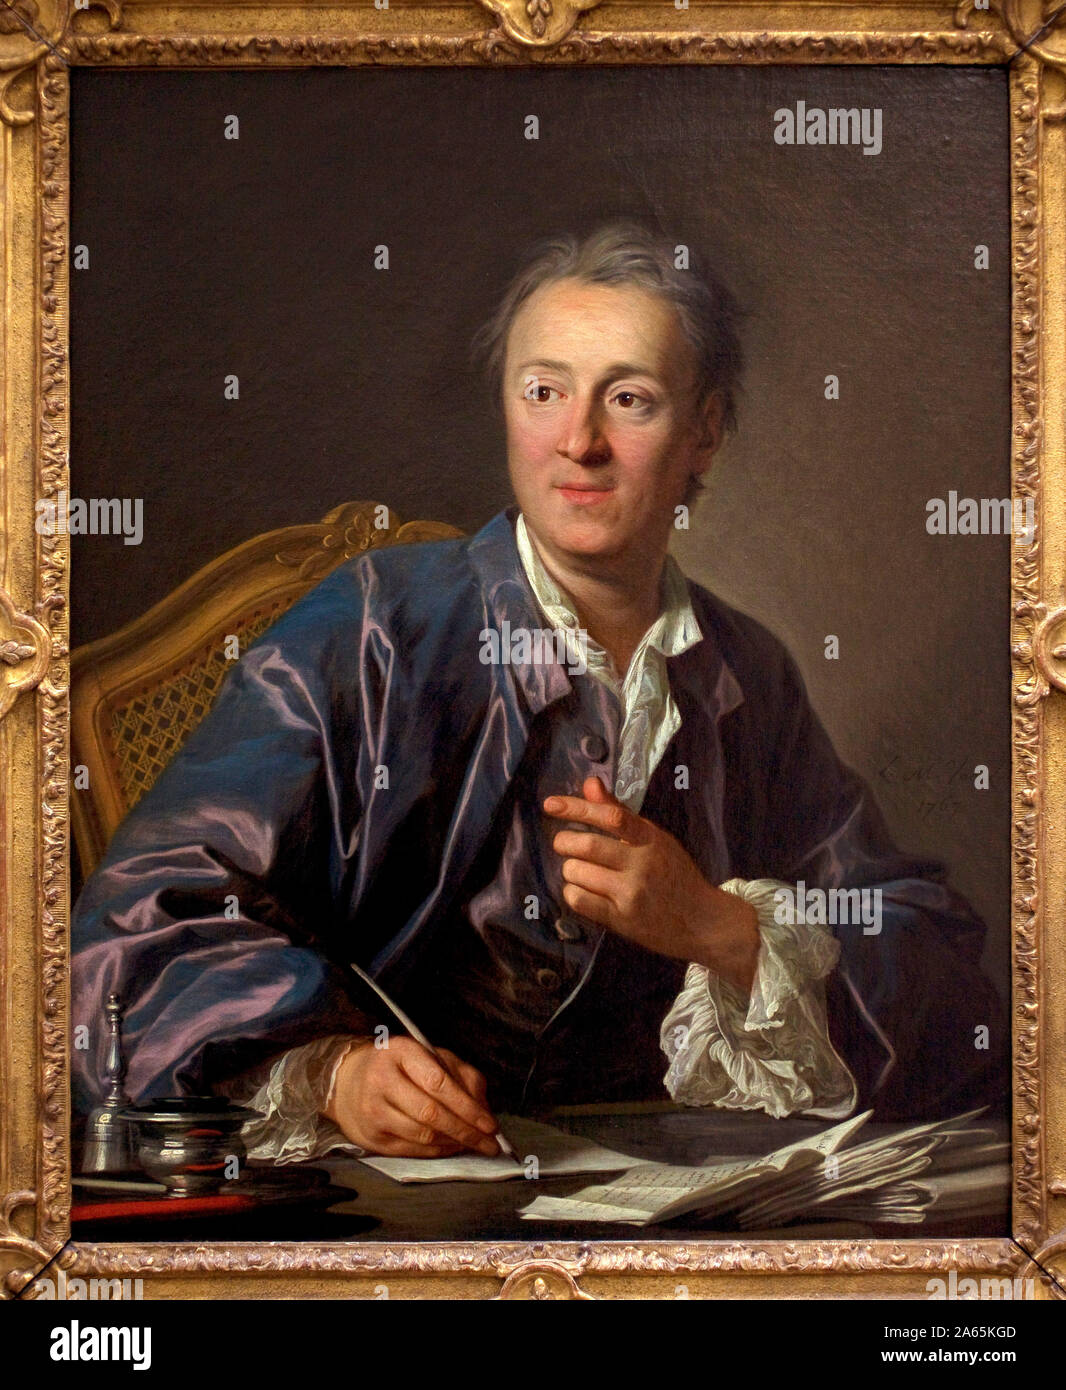 Retrato de Denis Diderot (1713-1784), ecrivain, philosophe, encyclopediste francais, peinture de Louis Michel Van Loo (1707-1771) Huile sur toile, 17 Foto de stock